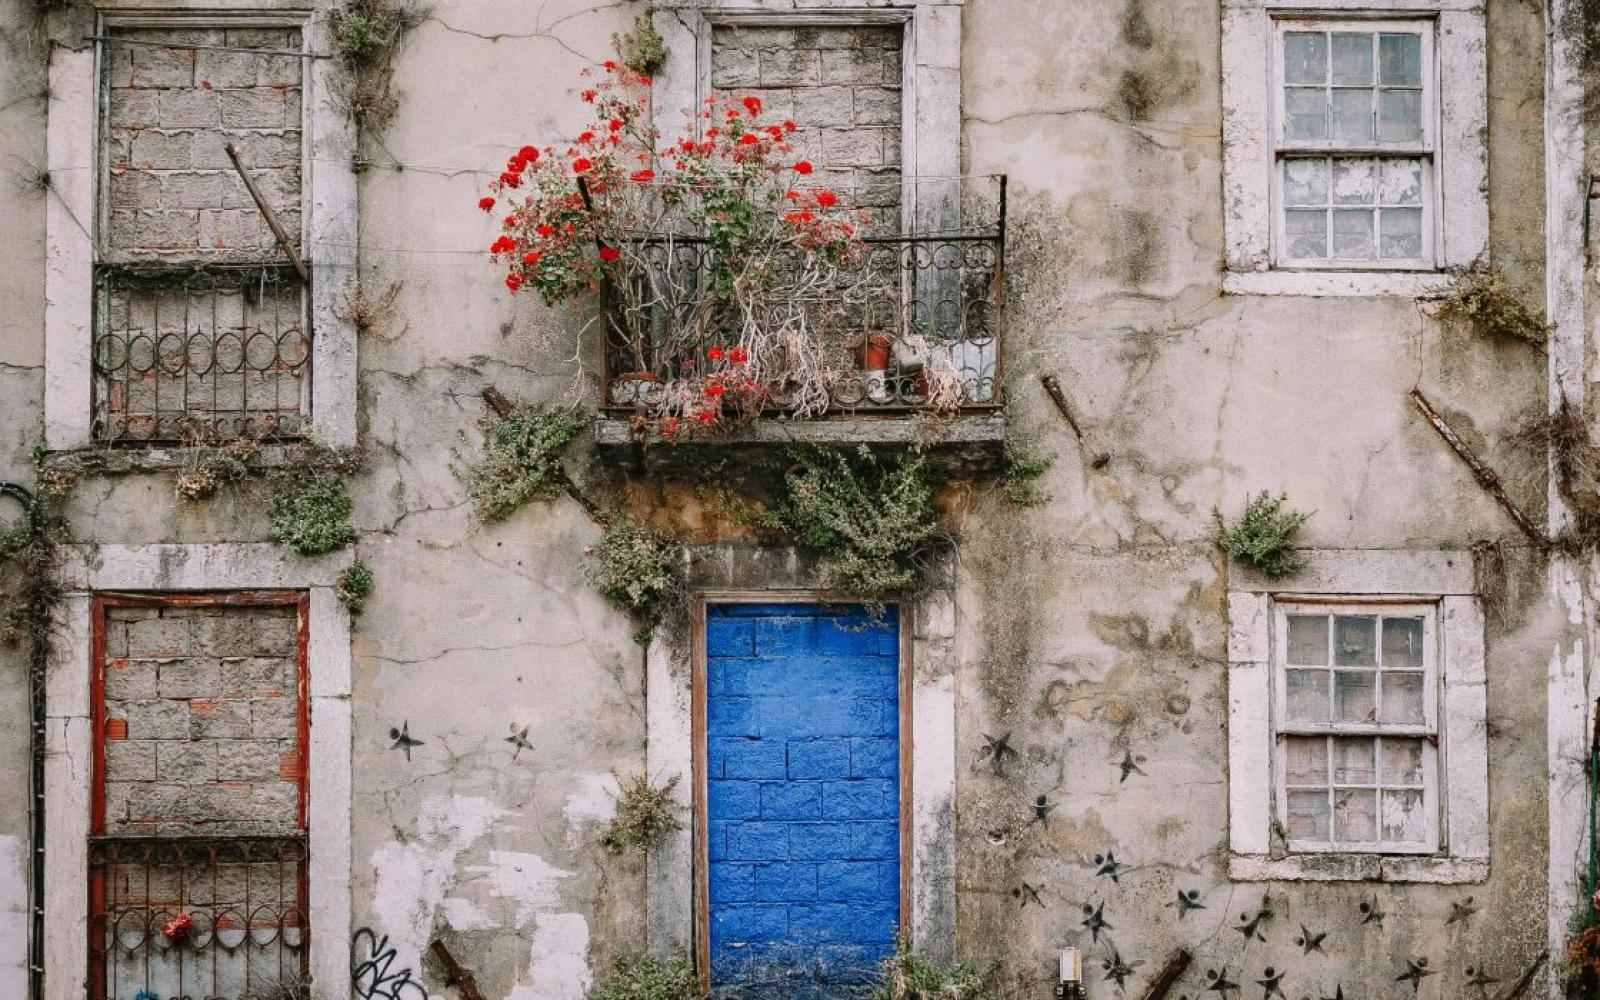 Zdjęcie ściany starego budynku. Miejsce na drzwi jest zamurowane pomalowanymi na niebiesko cegłami. Na balkonie na drzwiami roślina o czerwonych kwiatach.